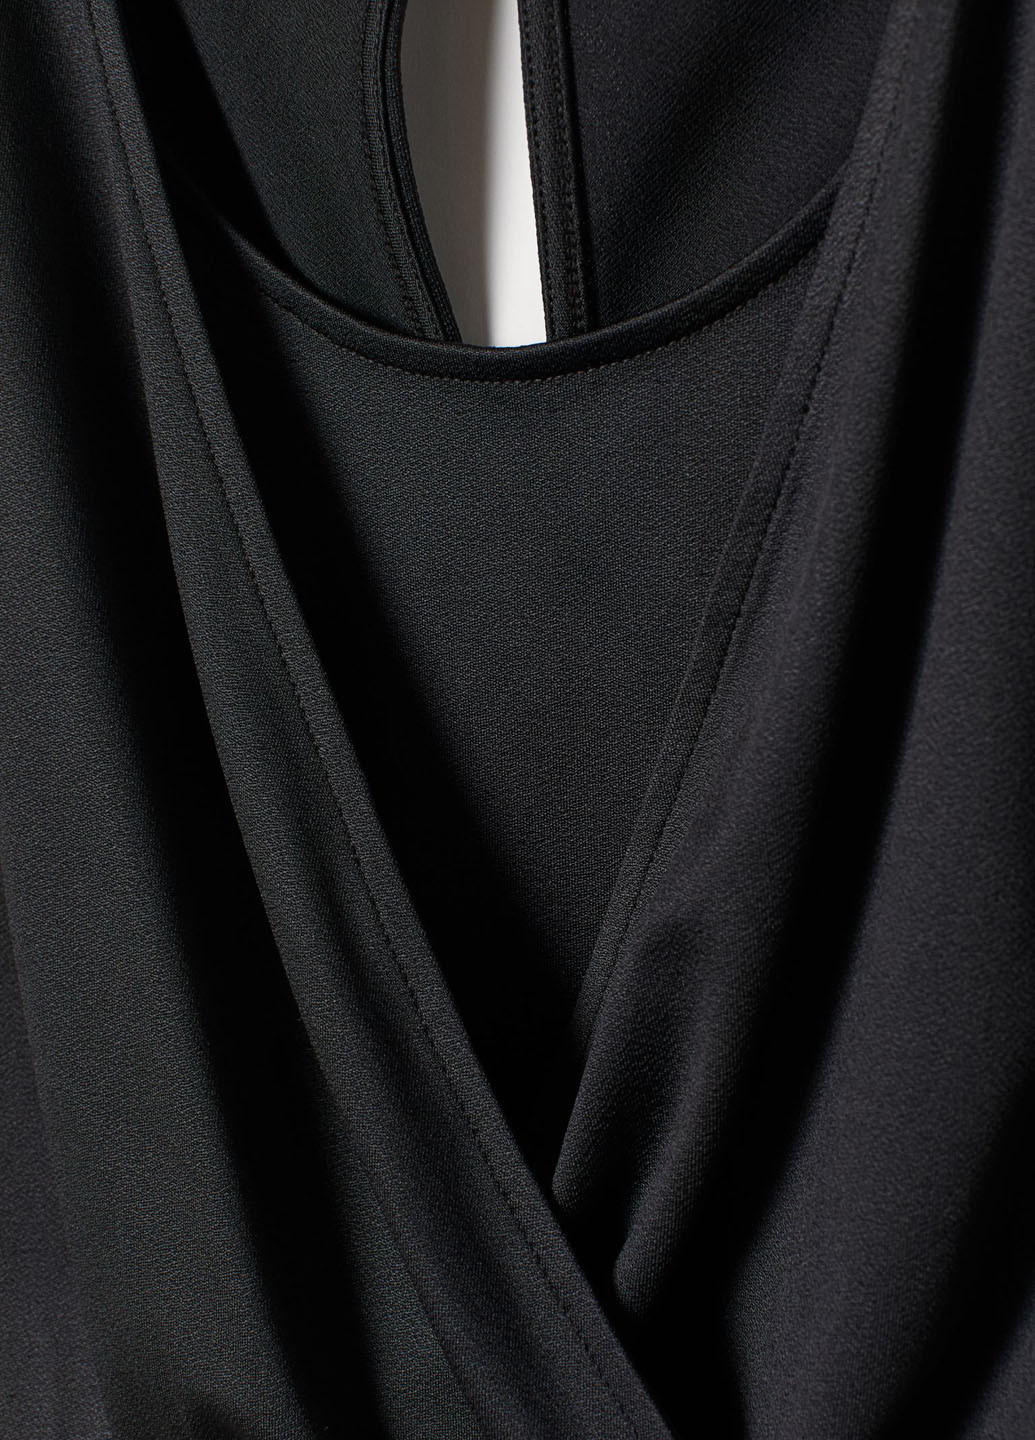 Комбинезон для кормящих мам H&M комбинезон-брюки однотонный чёрный кэжуал полиэстер, трикотаж